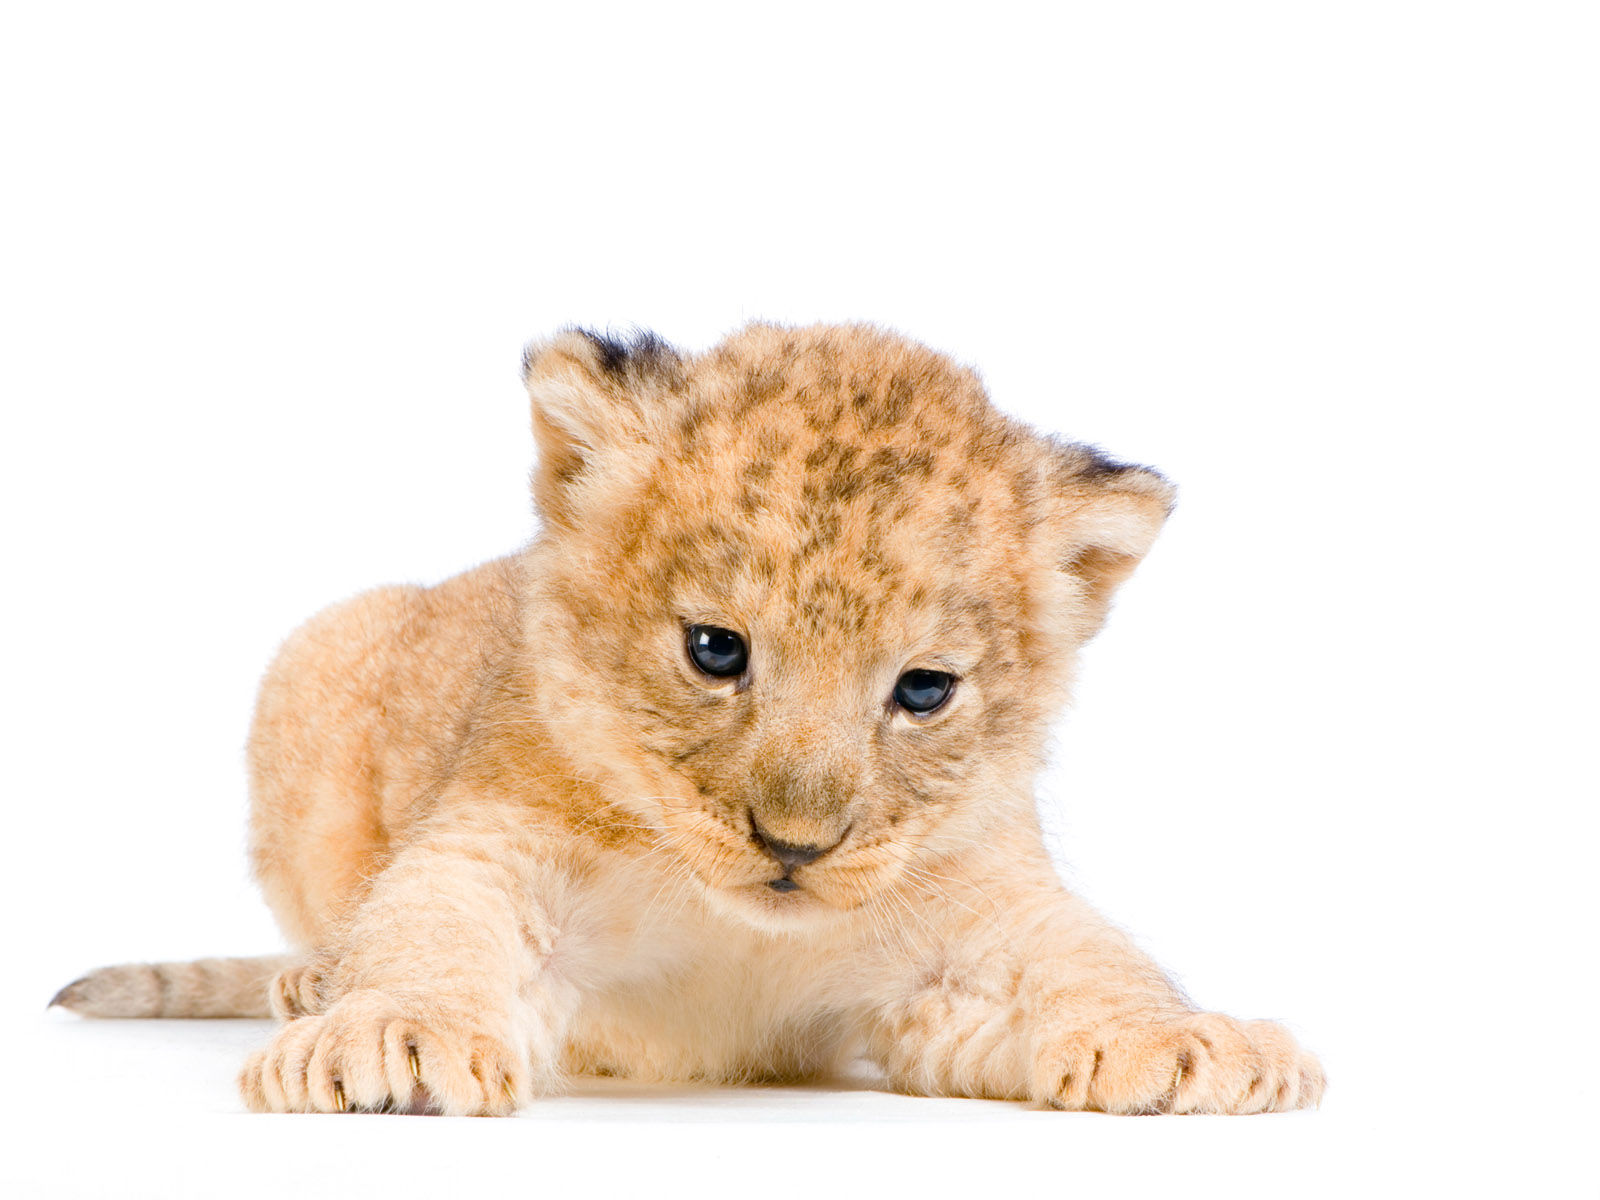 Lion cub sitting on grassy field